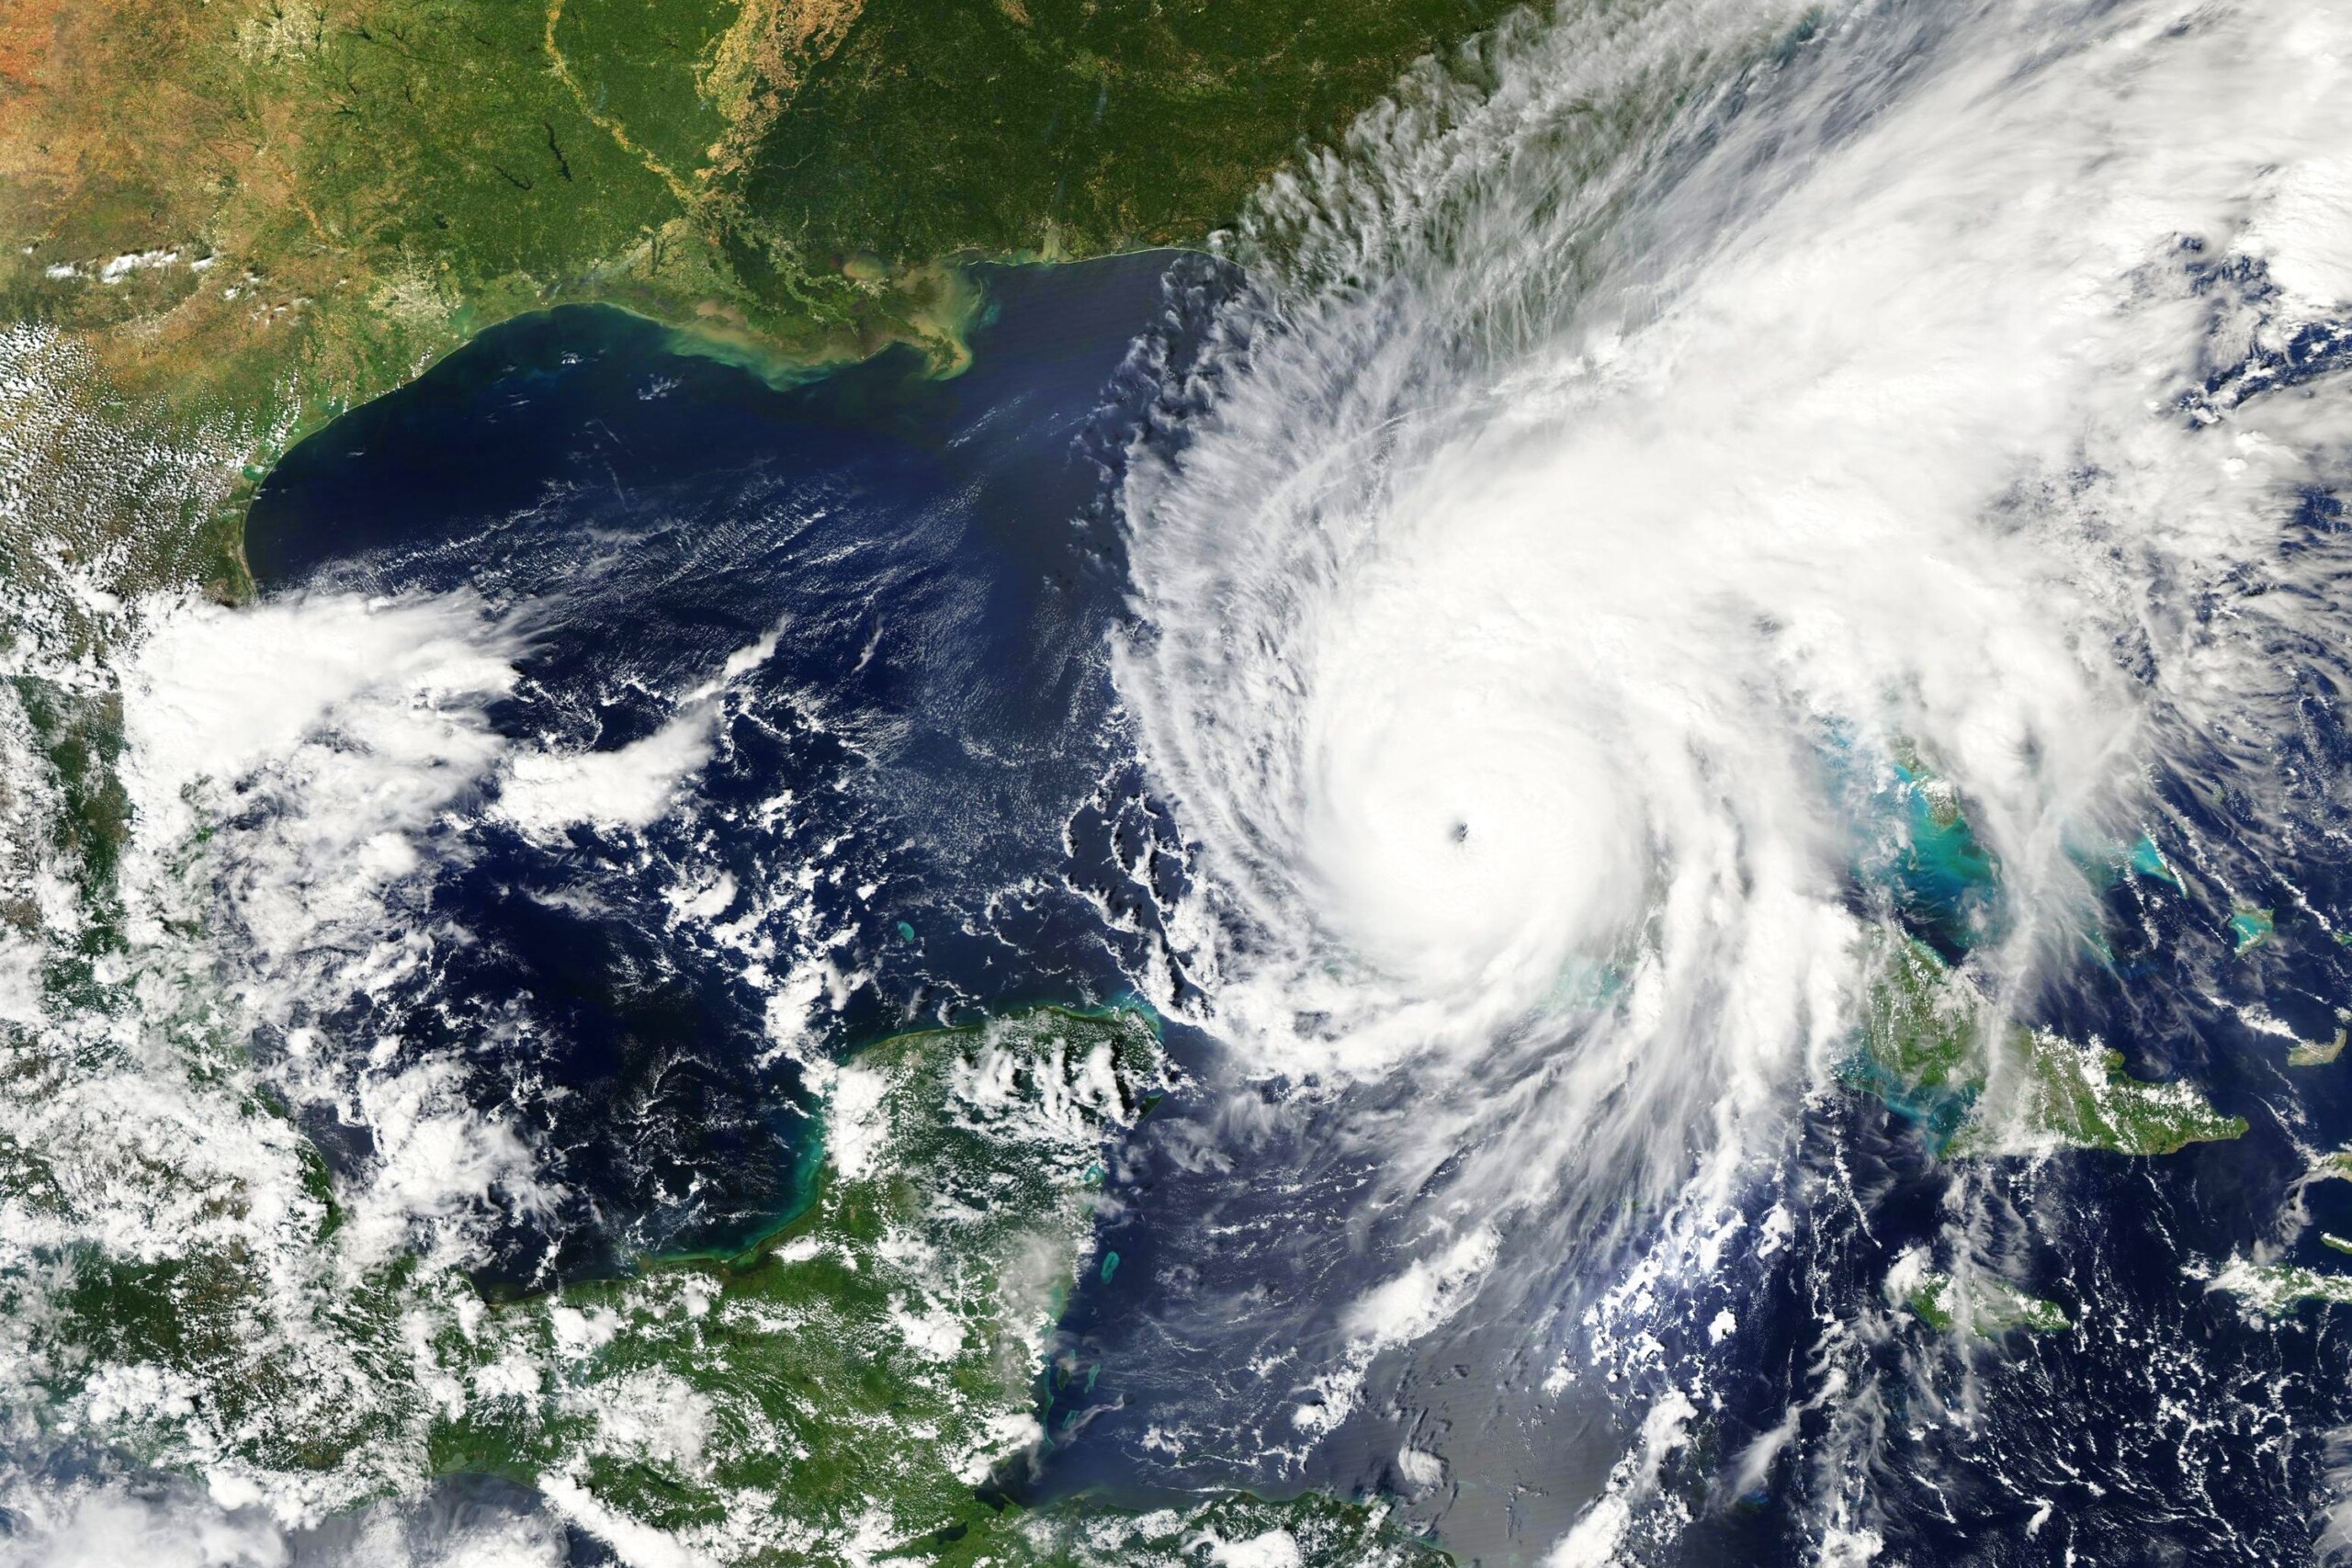 Huragan Ian zmierzający w kierunku wybrzeża Florydy we wrześniu 2022 r. — Elementy tego zdjęcia dostarczone przez NASA, licencja: shutterstock/By lavizzara